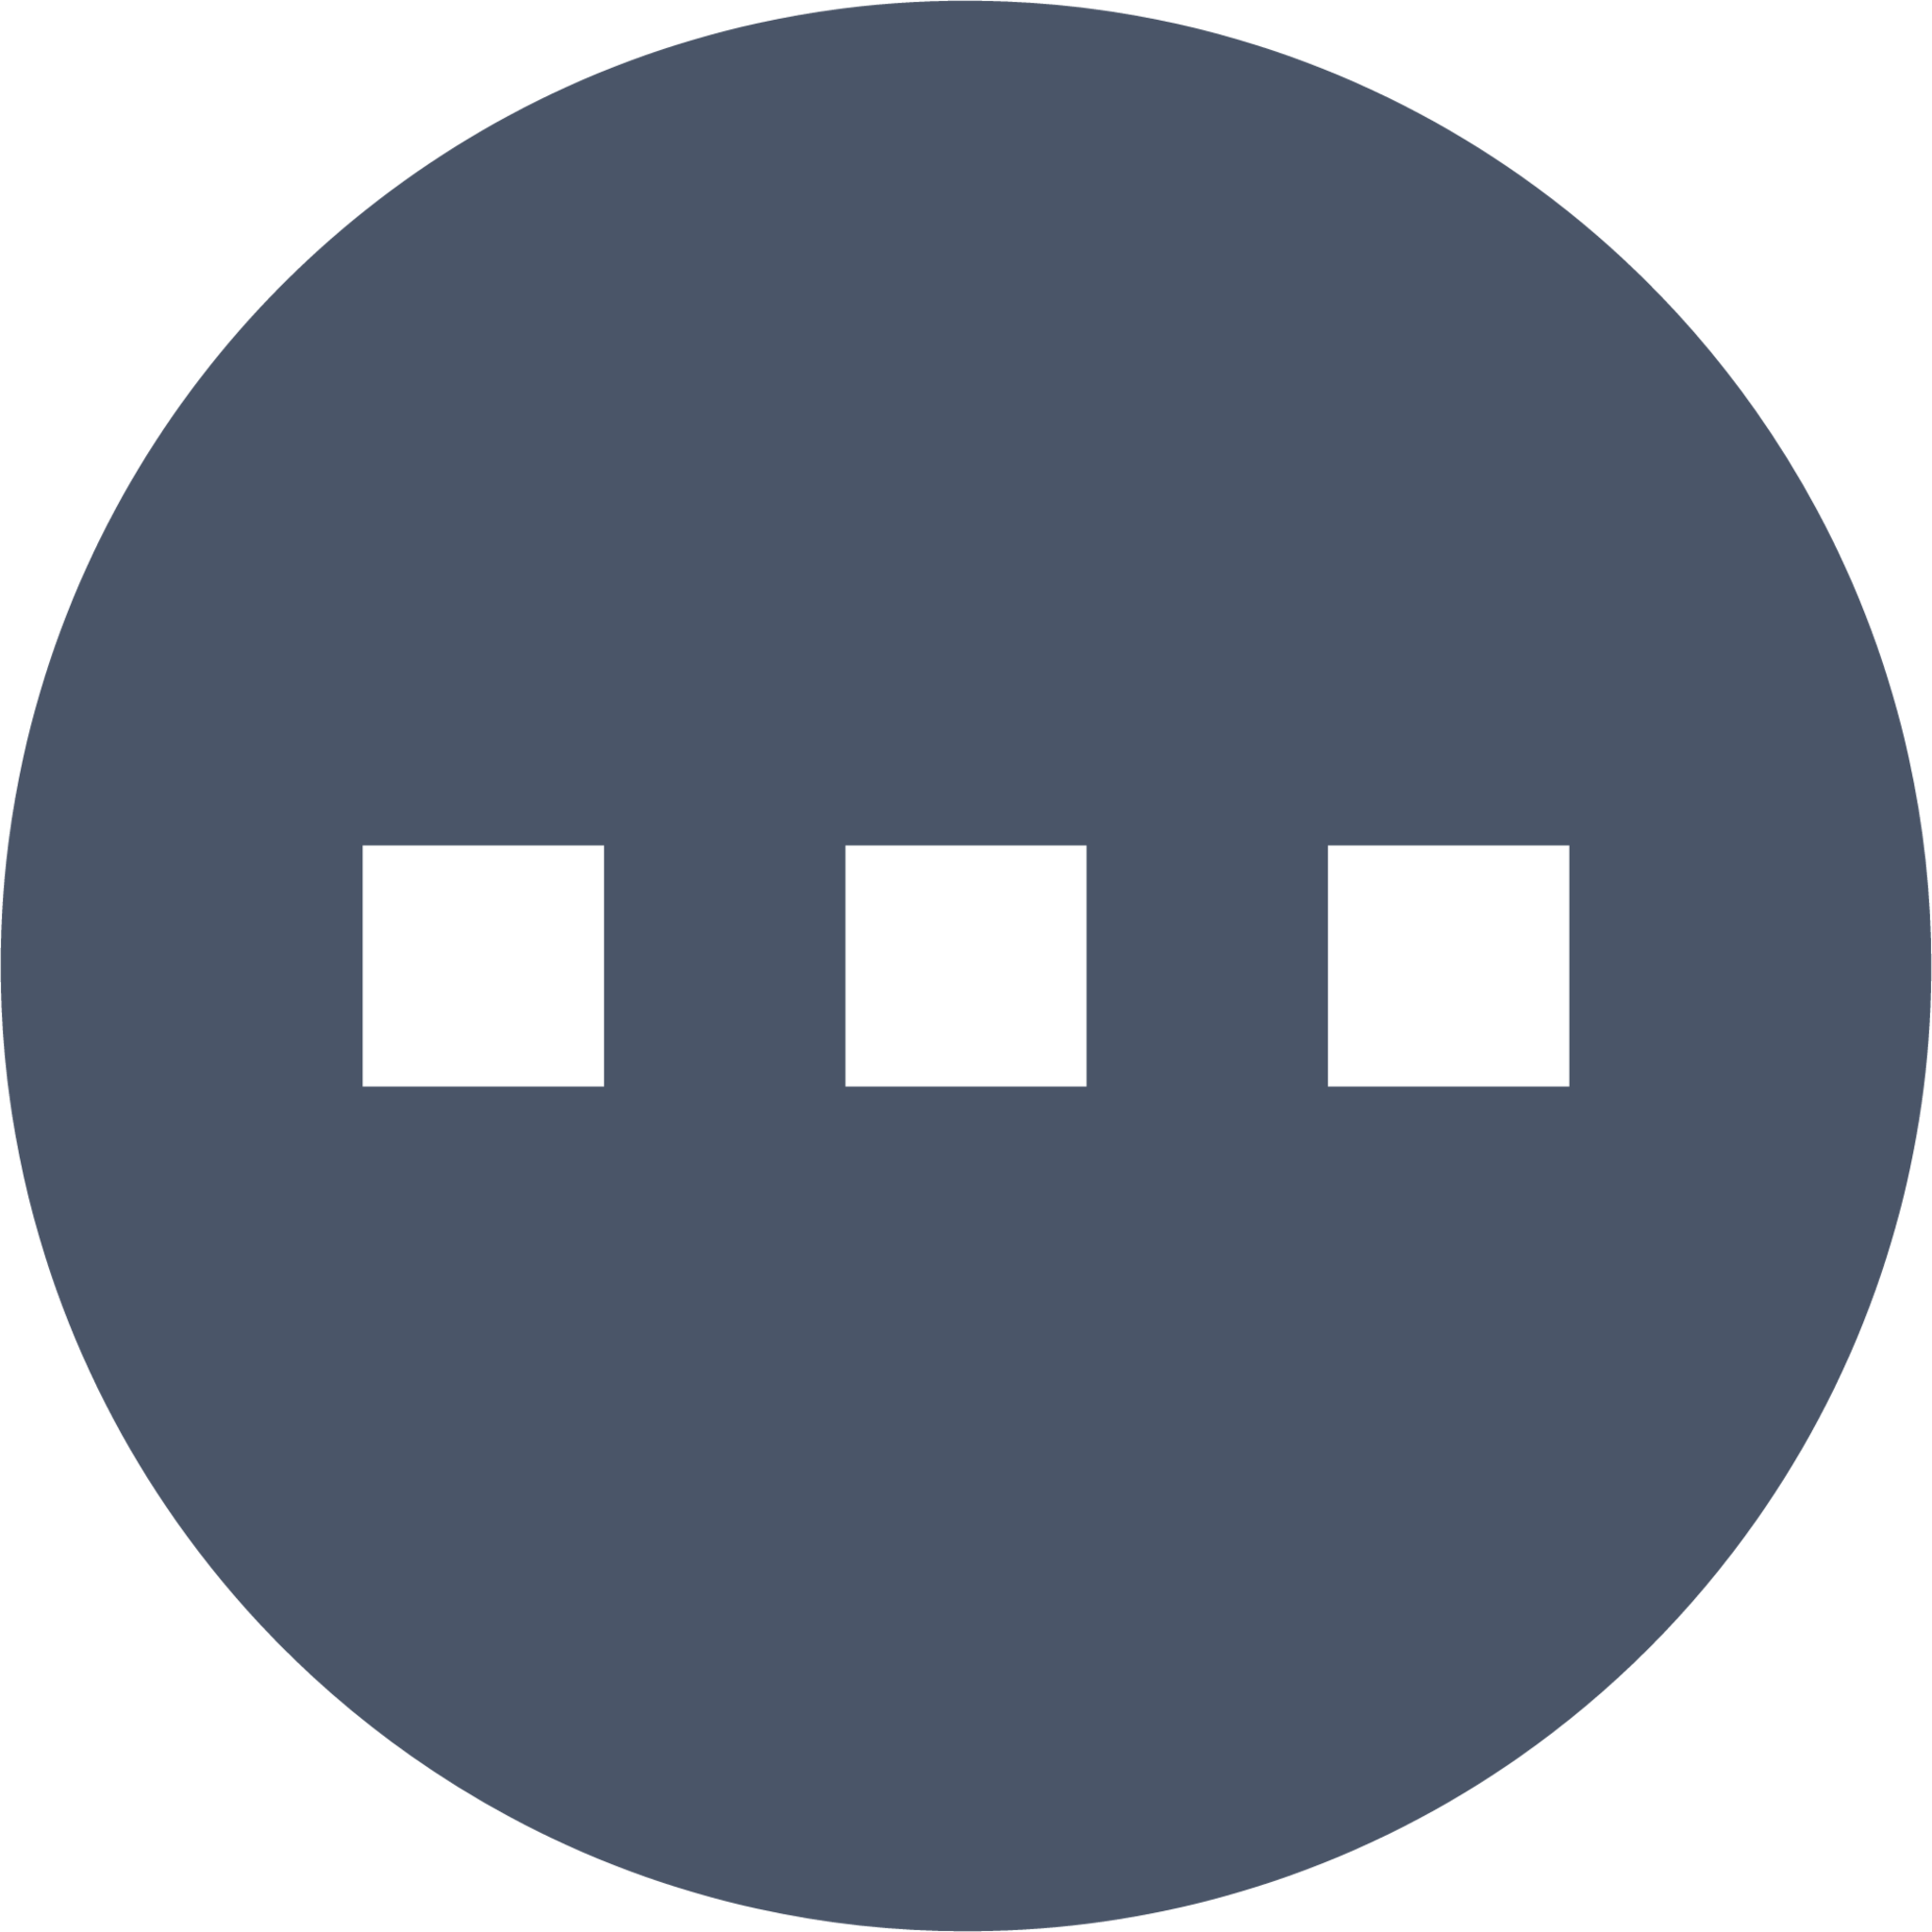 dots circle horizontal icon